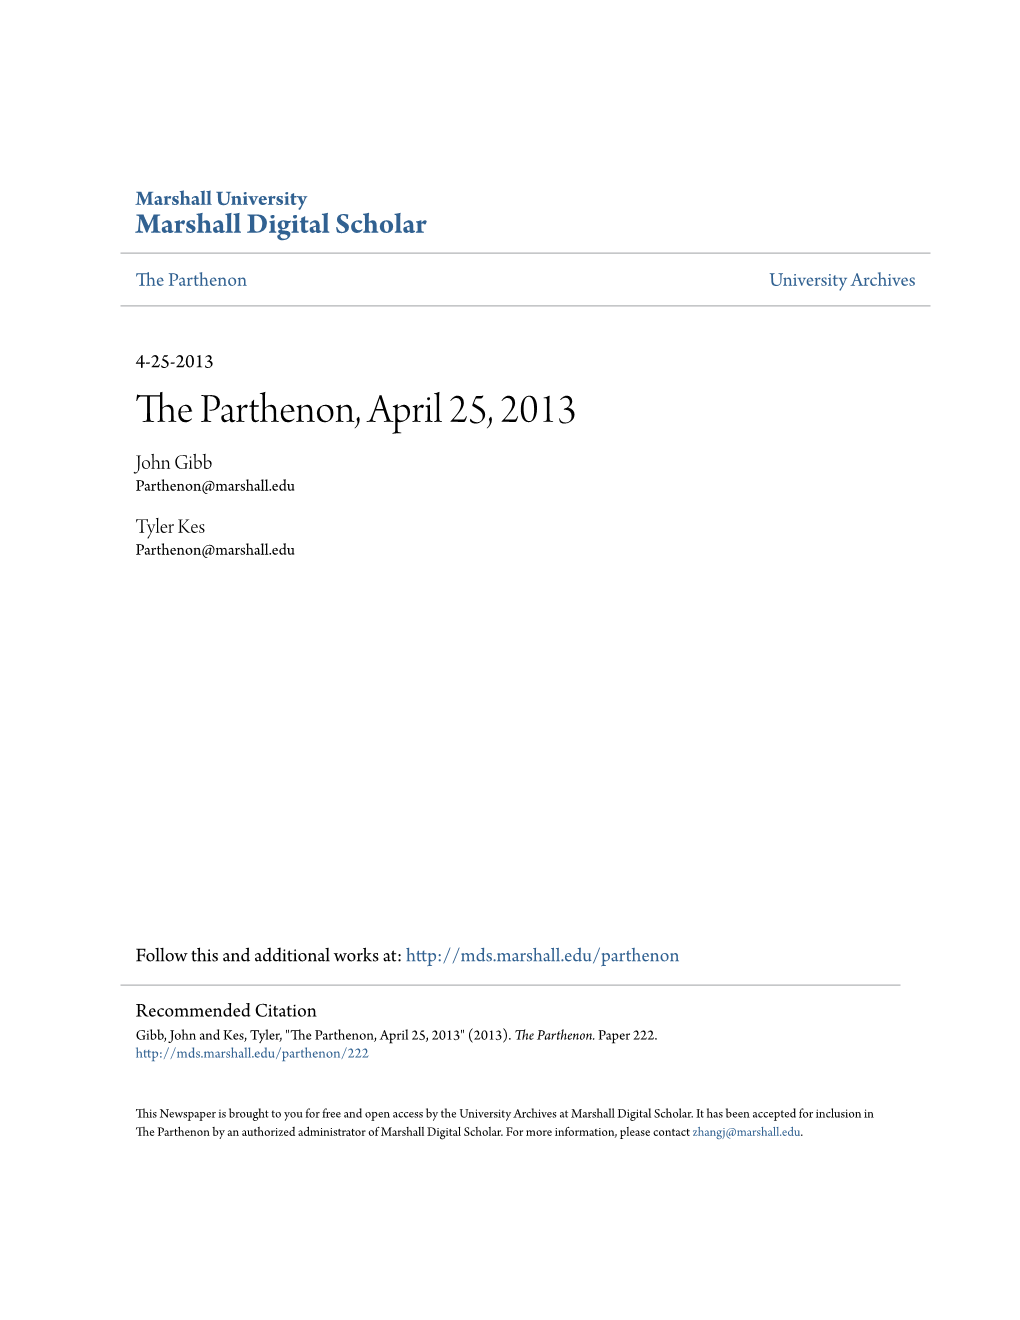 The Parthenon, April 25, 2013